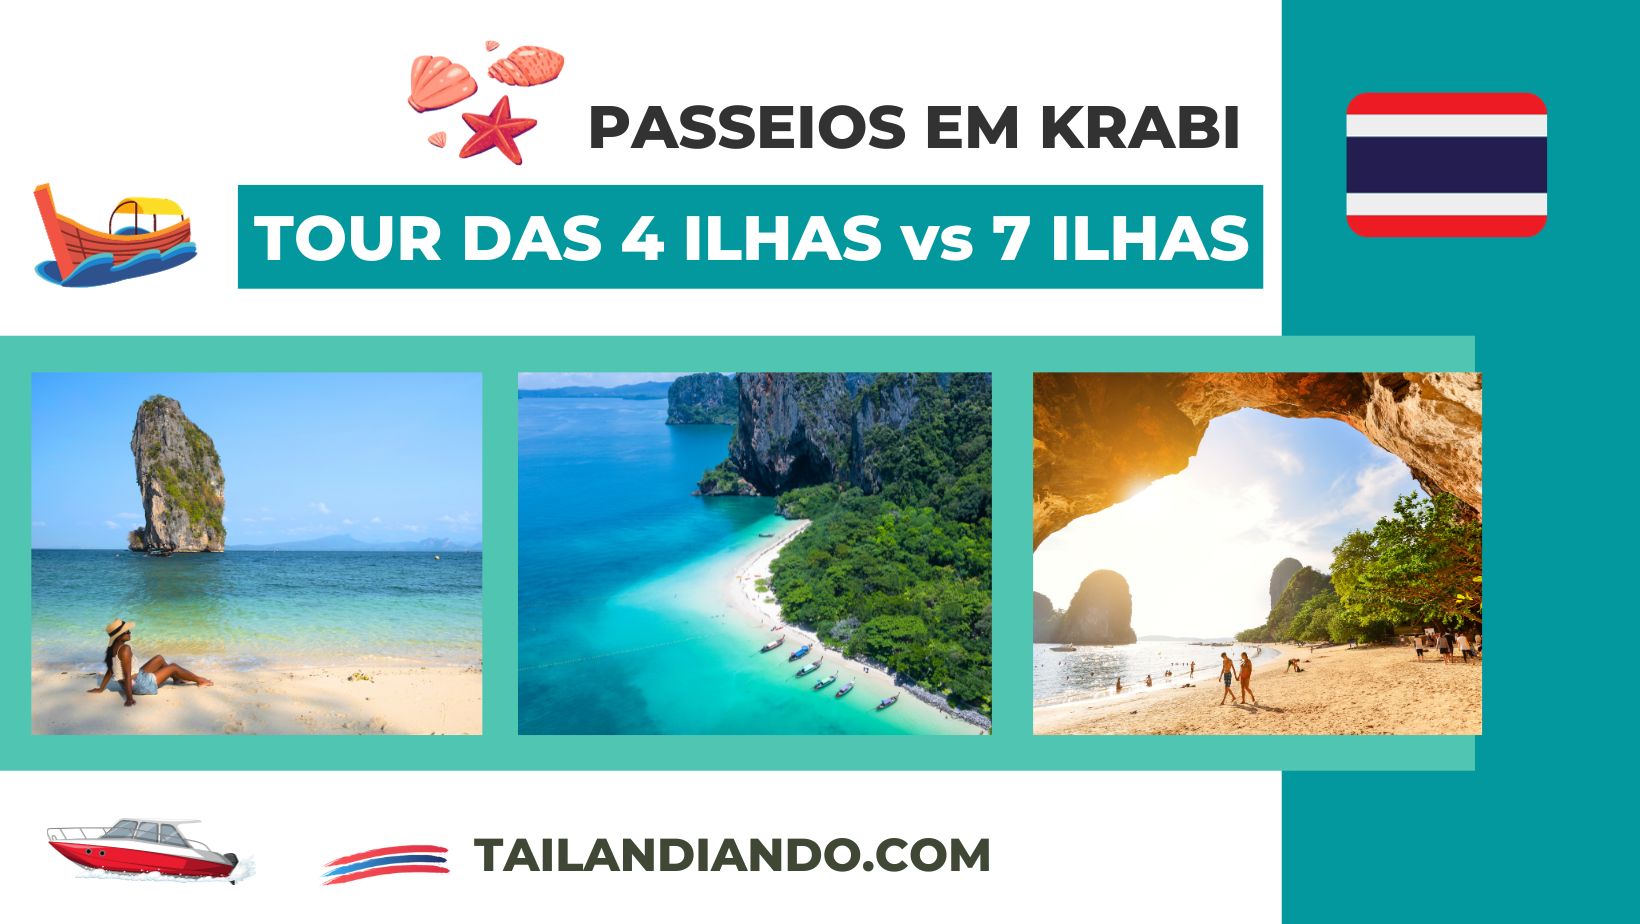 Diferença entre o passeio 4 ilhas e 7 ilhas em Krabi - passeios em Krabi pela Tailandiando - agência brasileira na Tailândia